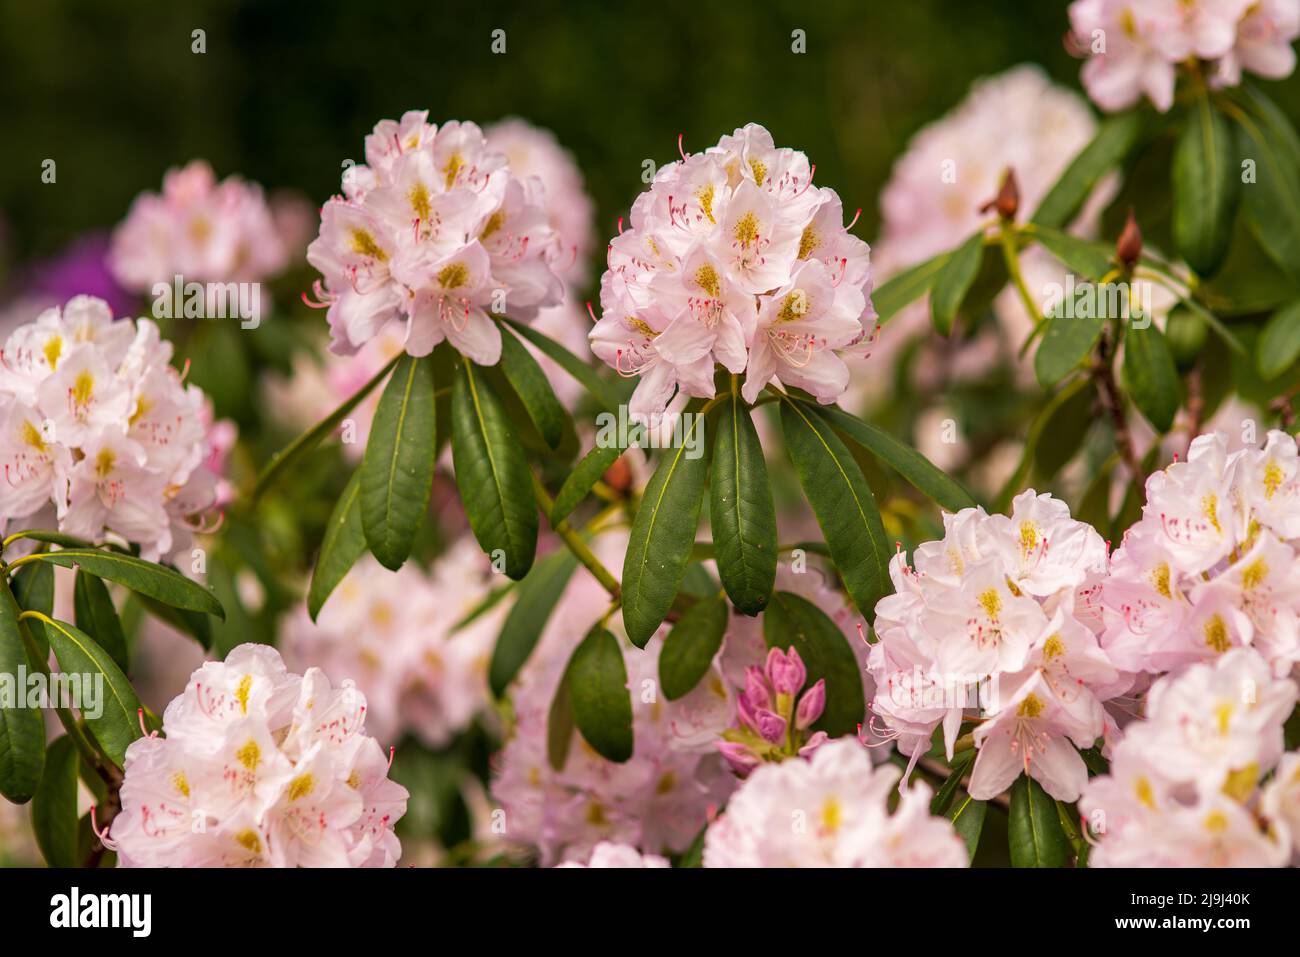 Blühende zarte rosa Knospen von Rhododendron im Frühlingsgarten Stockfoto